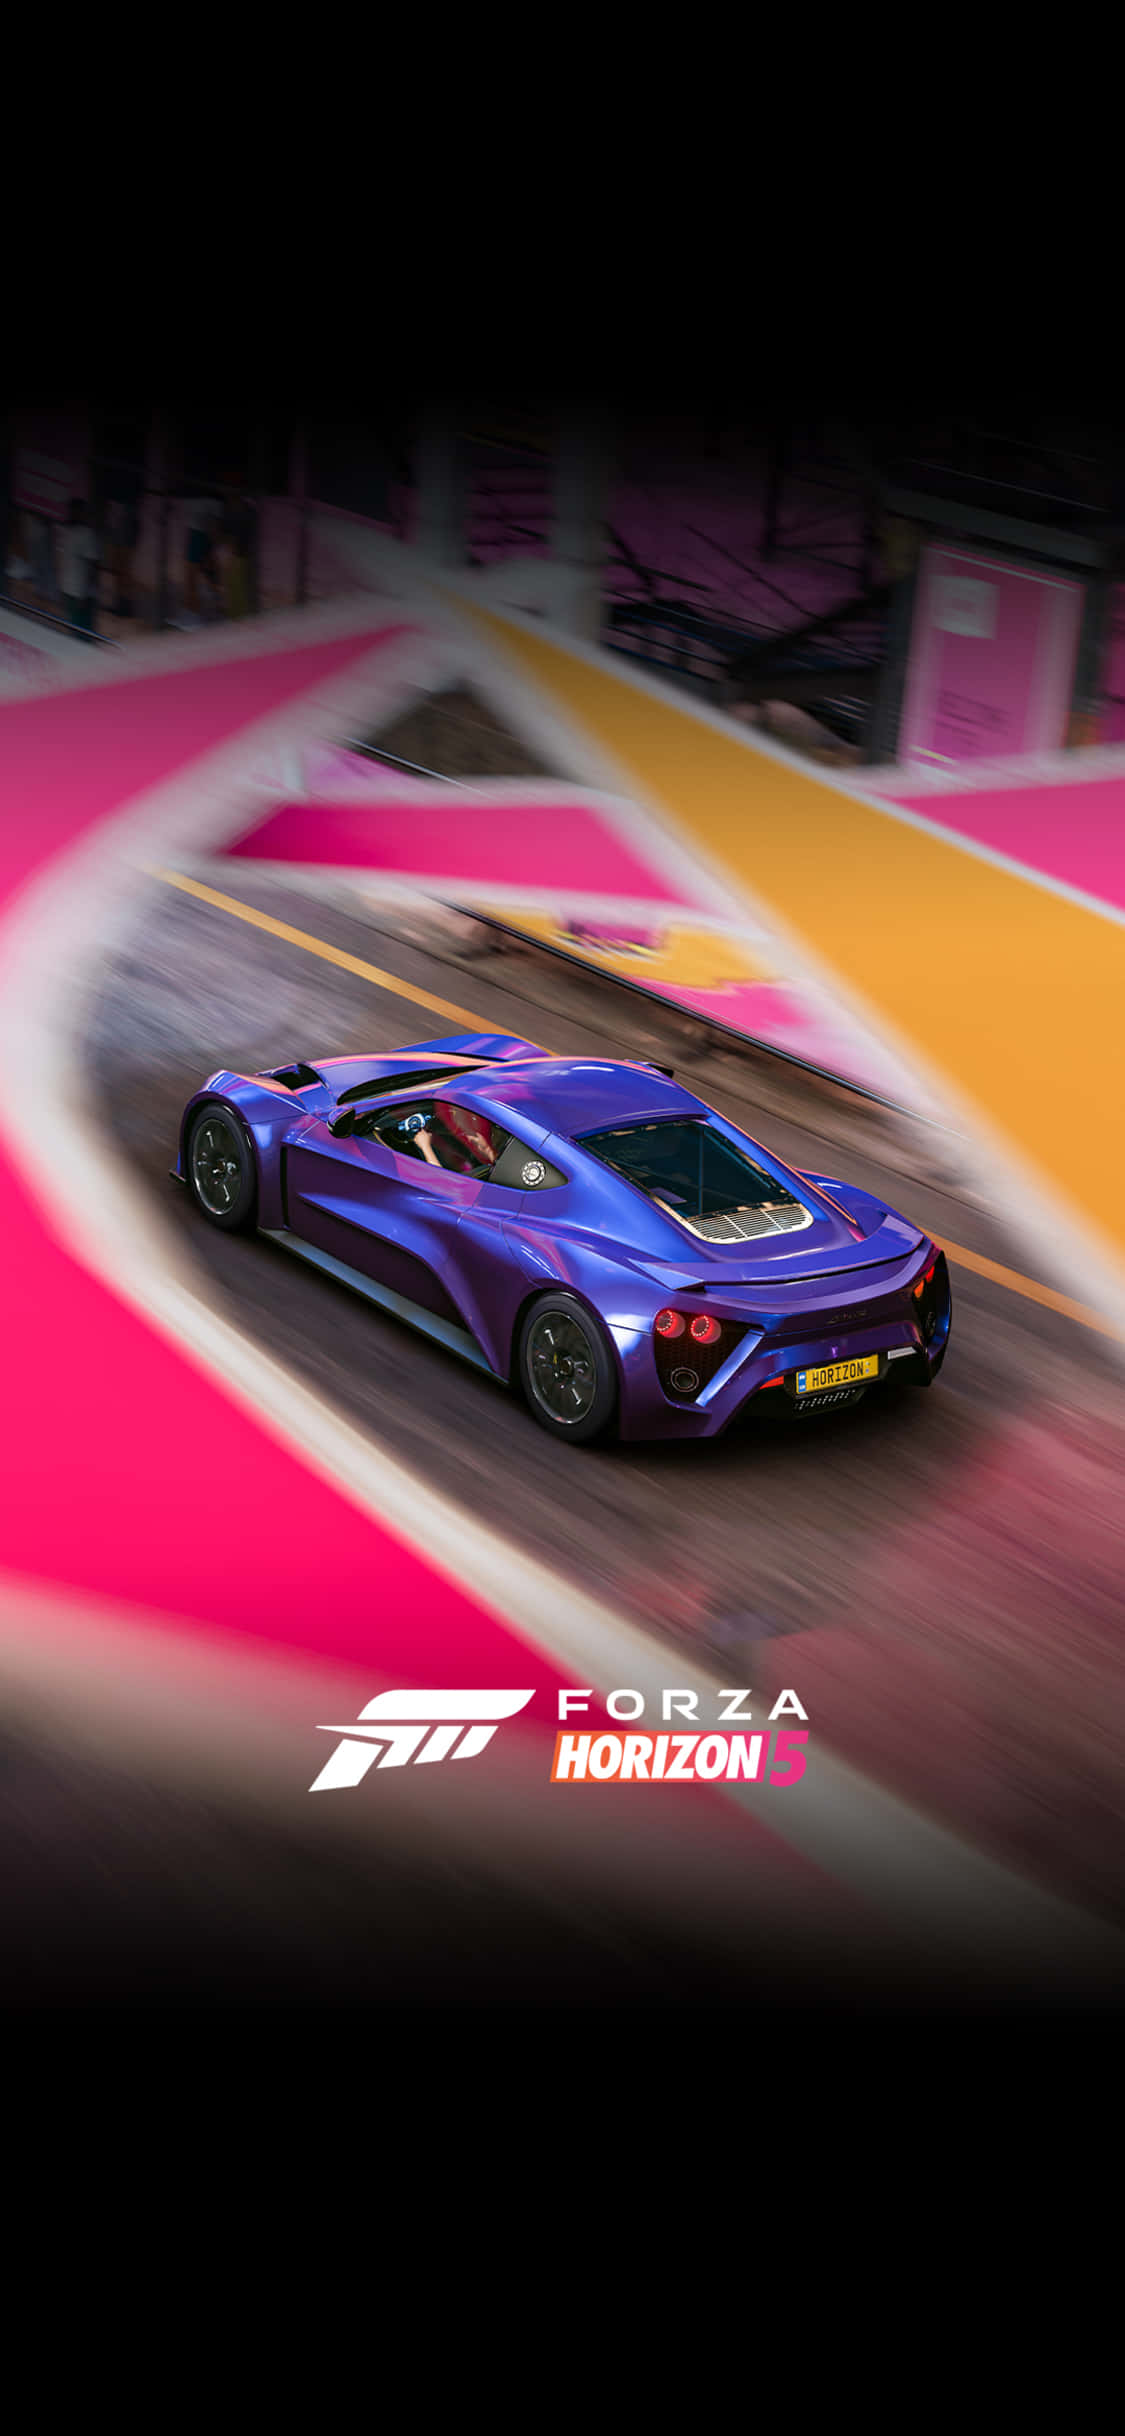 Fondode Pantalla De Un Zenvo Azul Para Iphone X En El Juego Forza Motorsport 7.